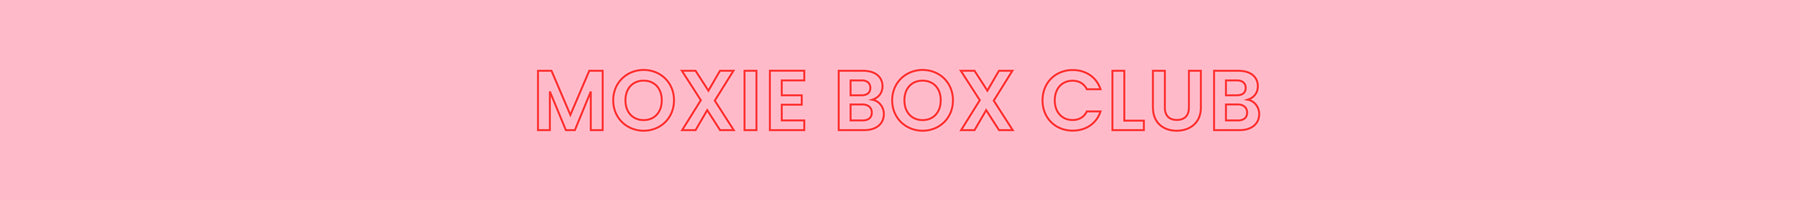 Moxie Box Club